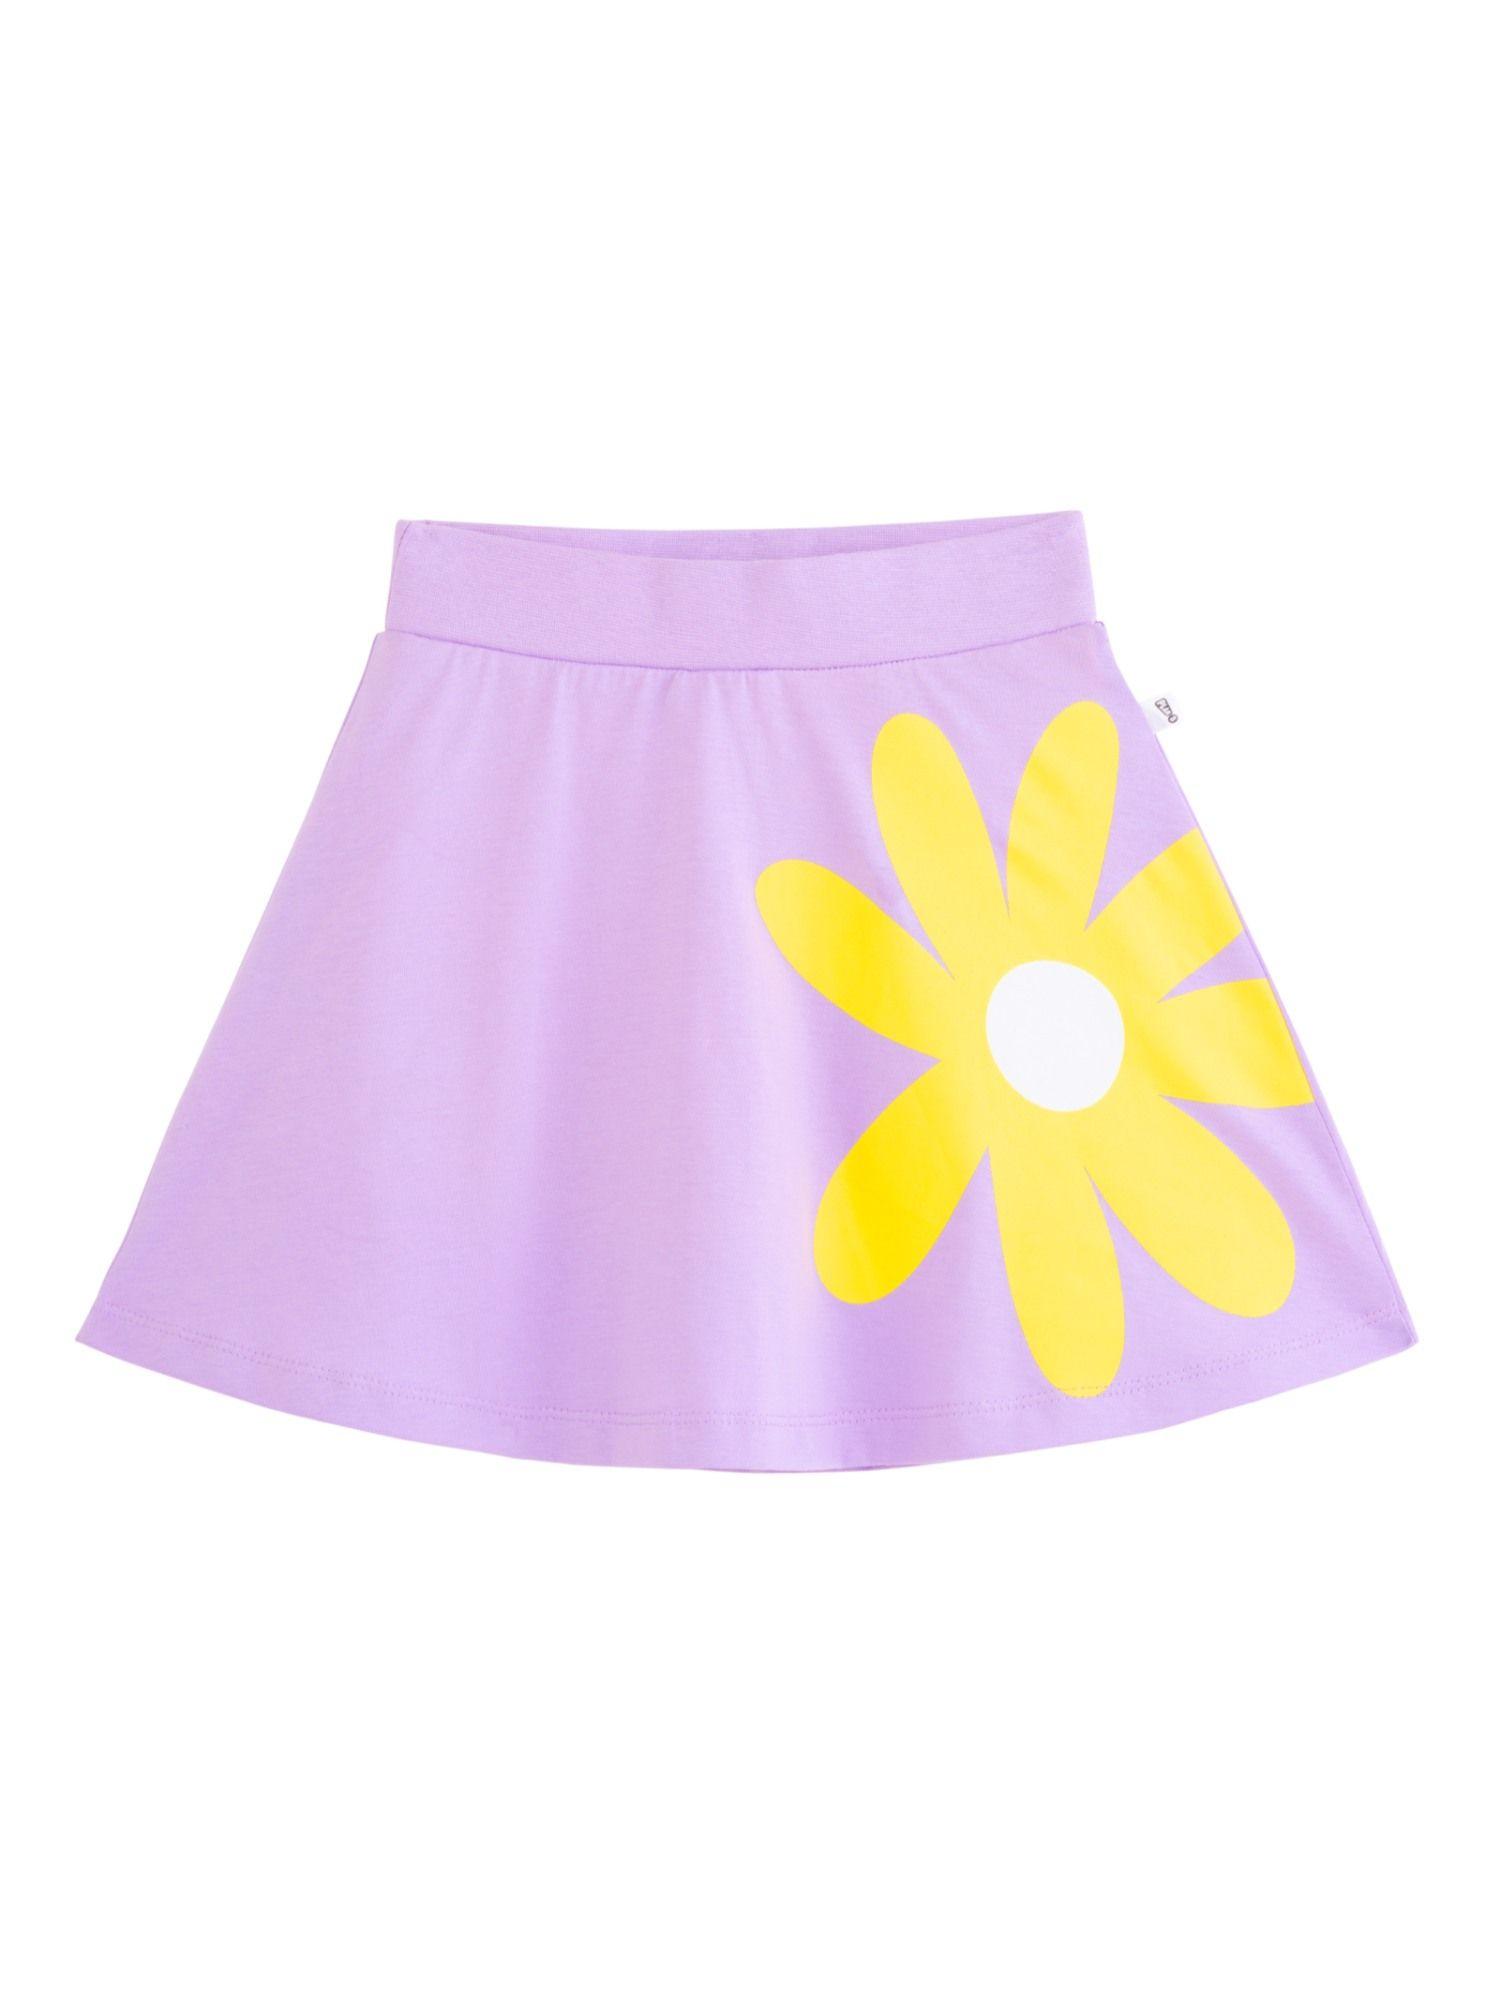 sunflower skater skirt with inbuilt shorties